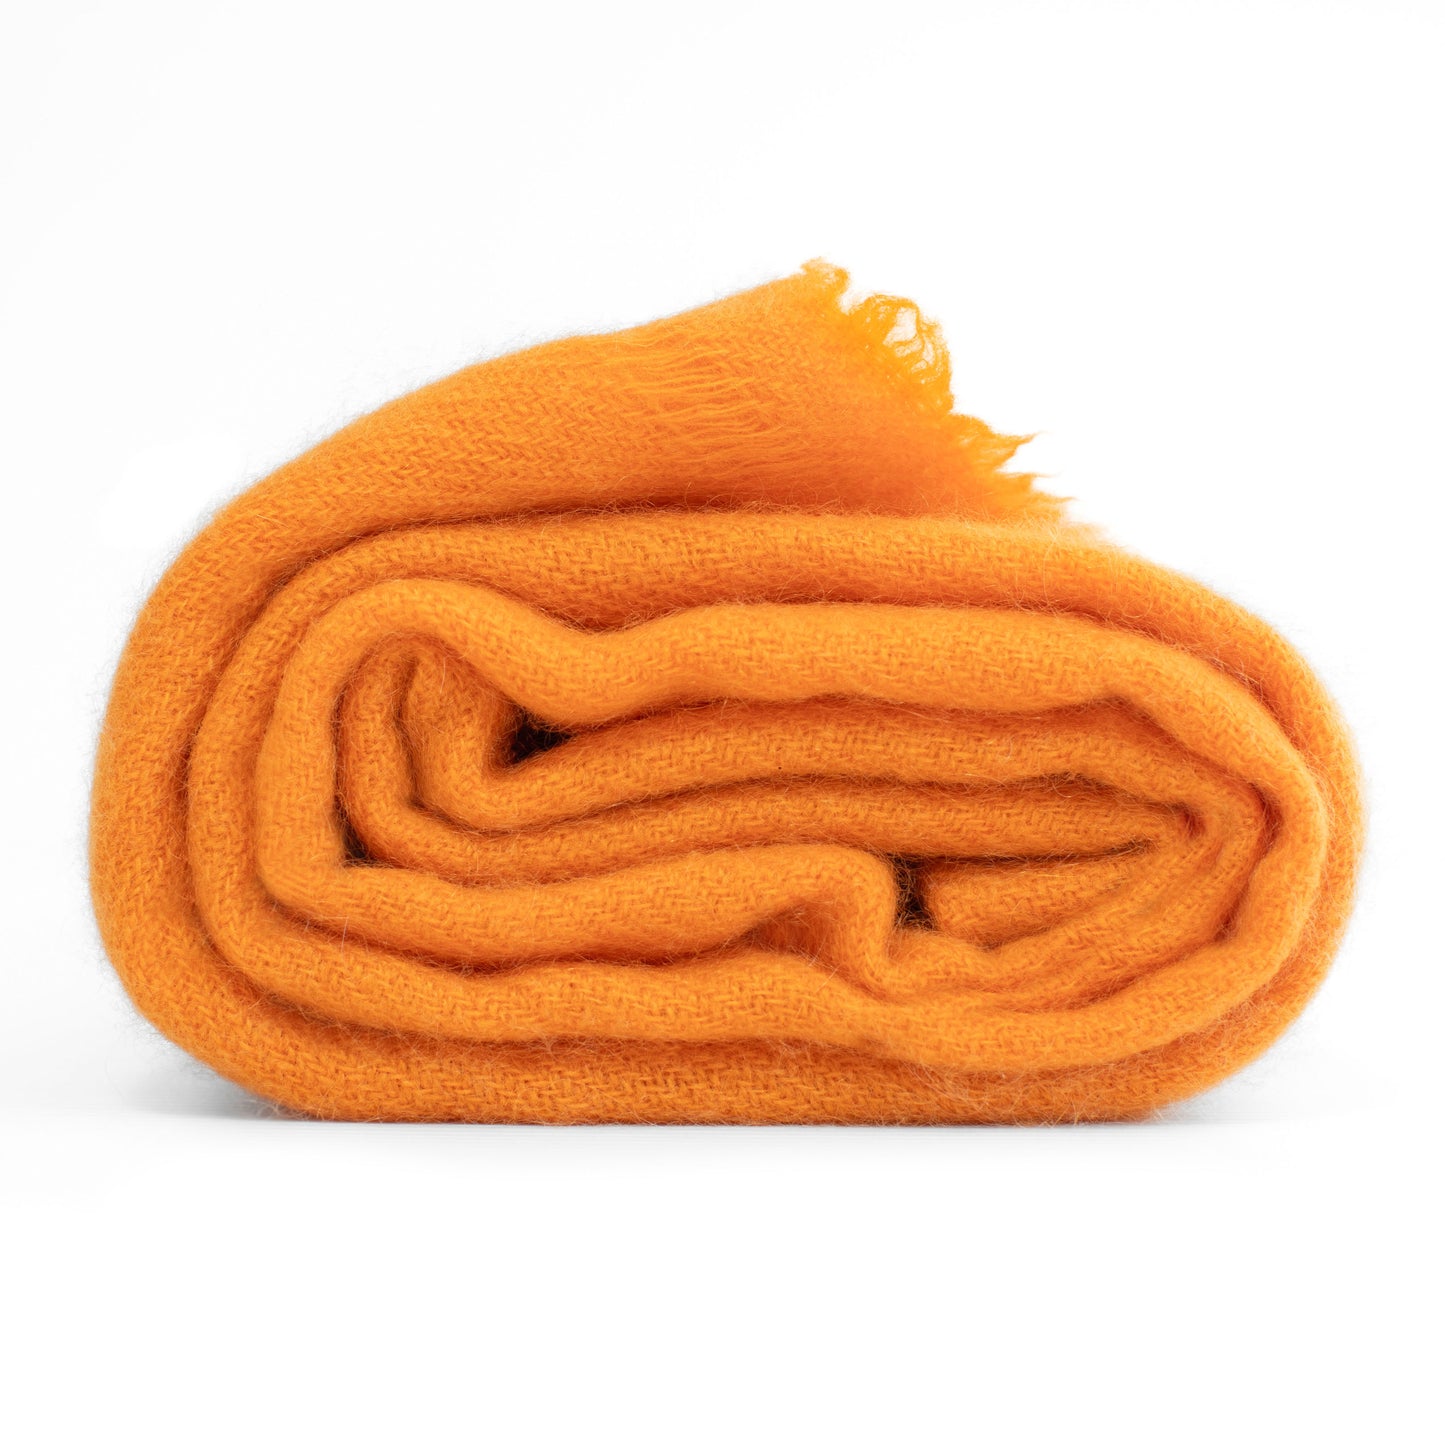 Cashmere woven shawl wrap all orange